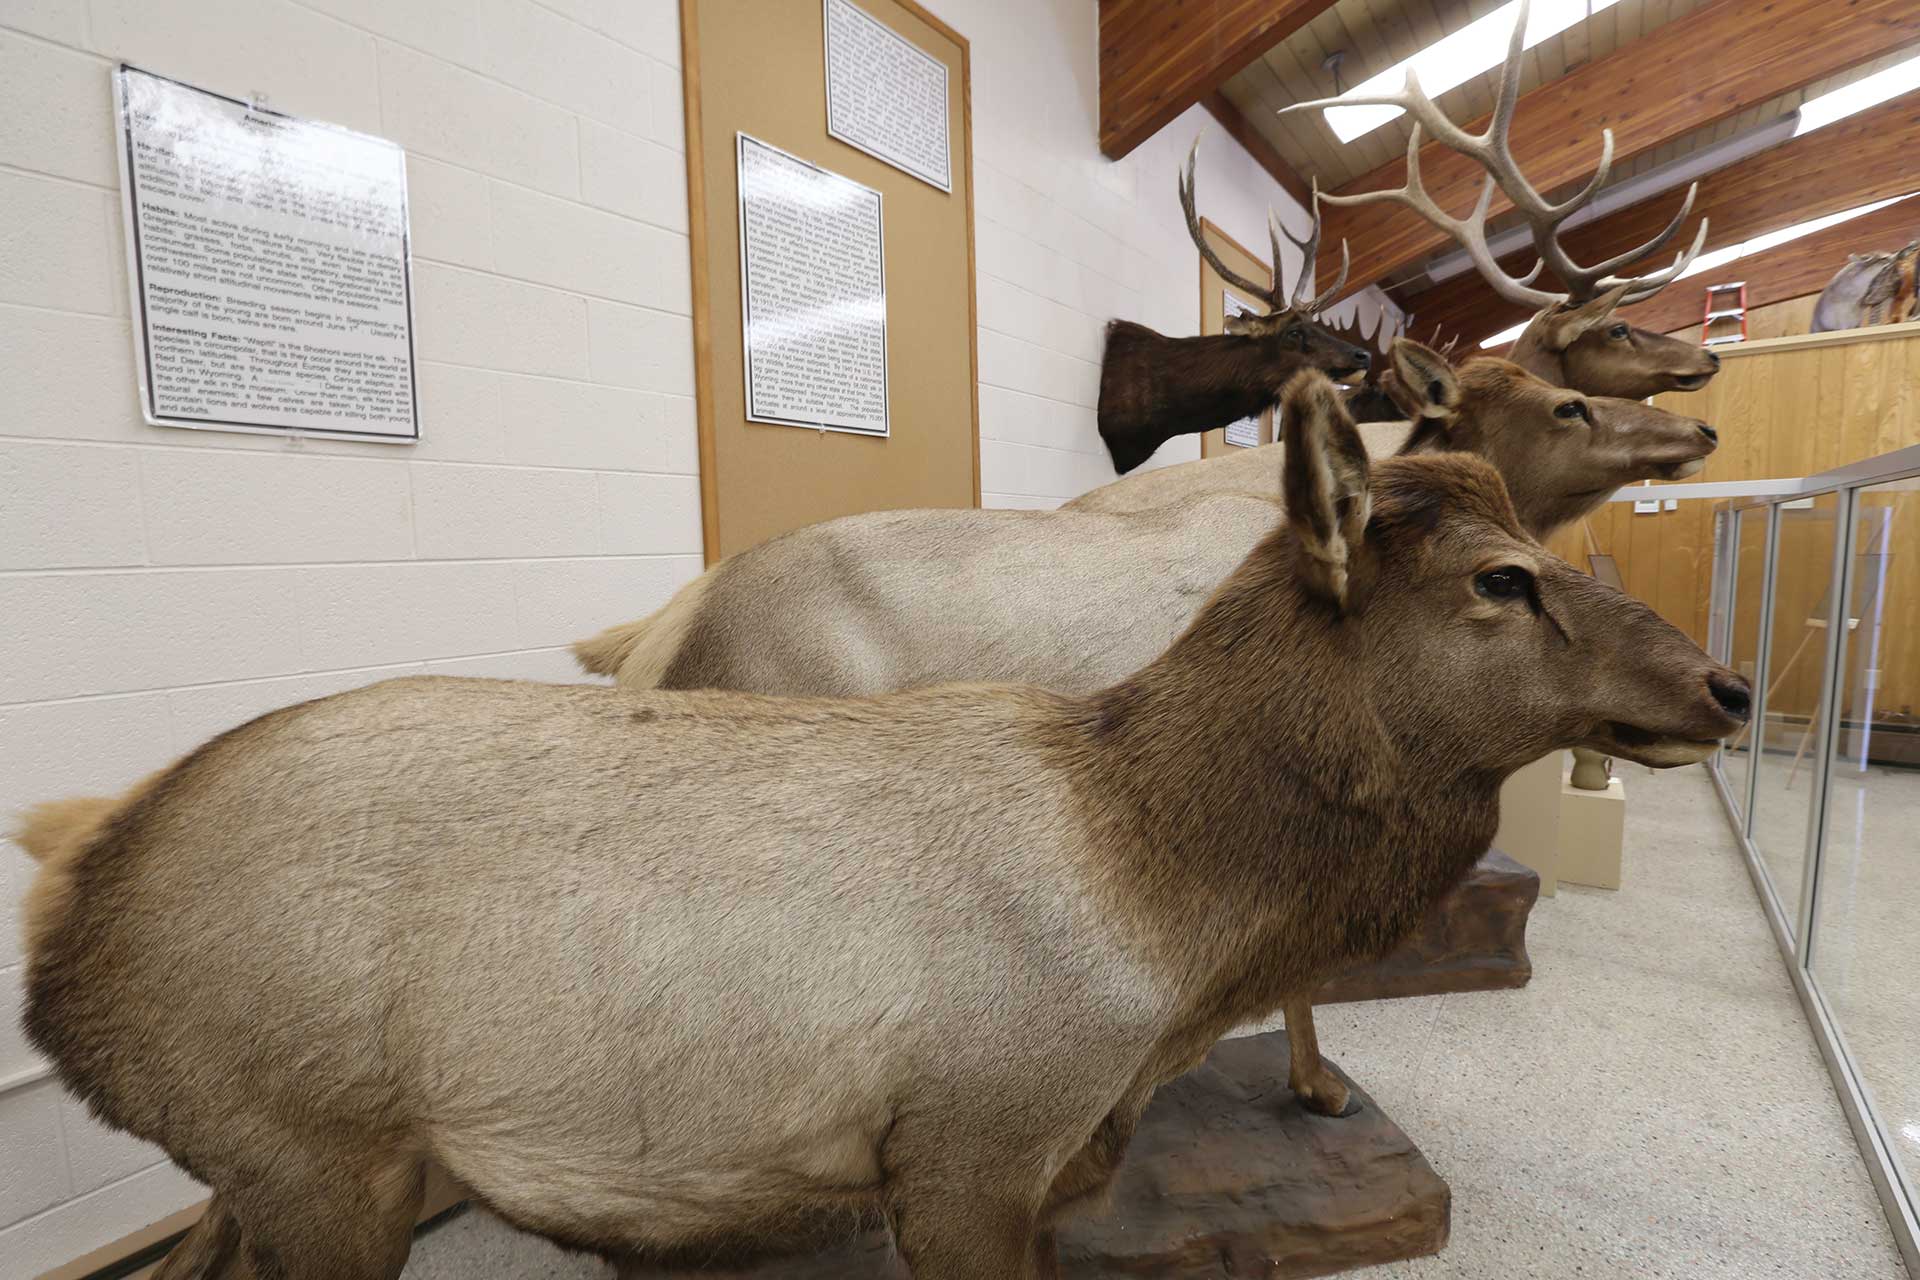 Elk in the Werner Museum